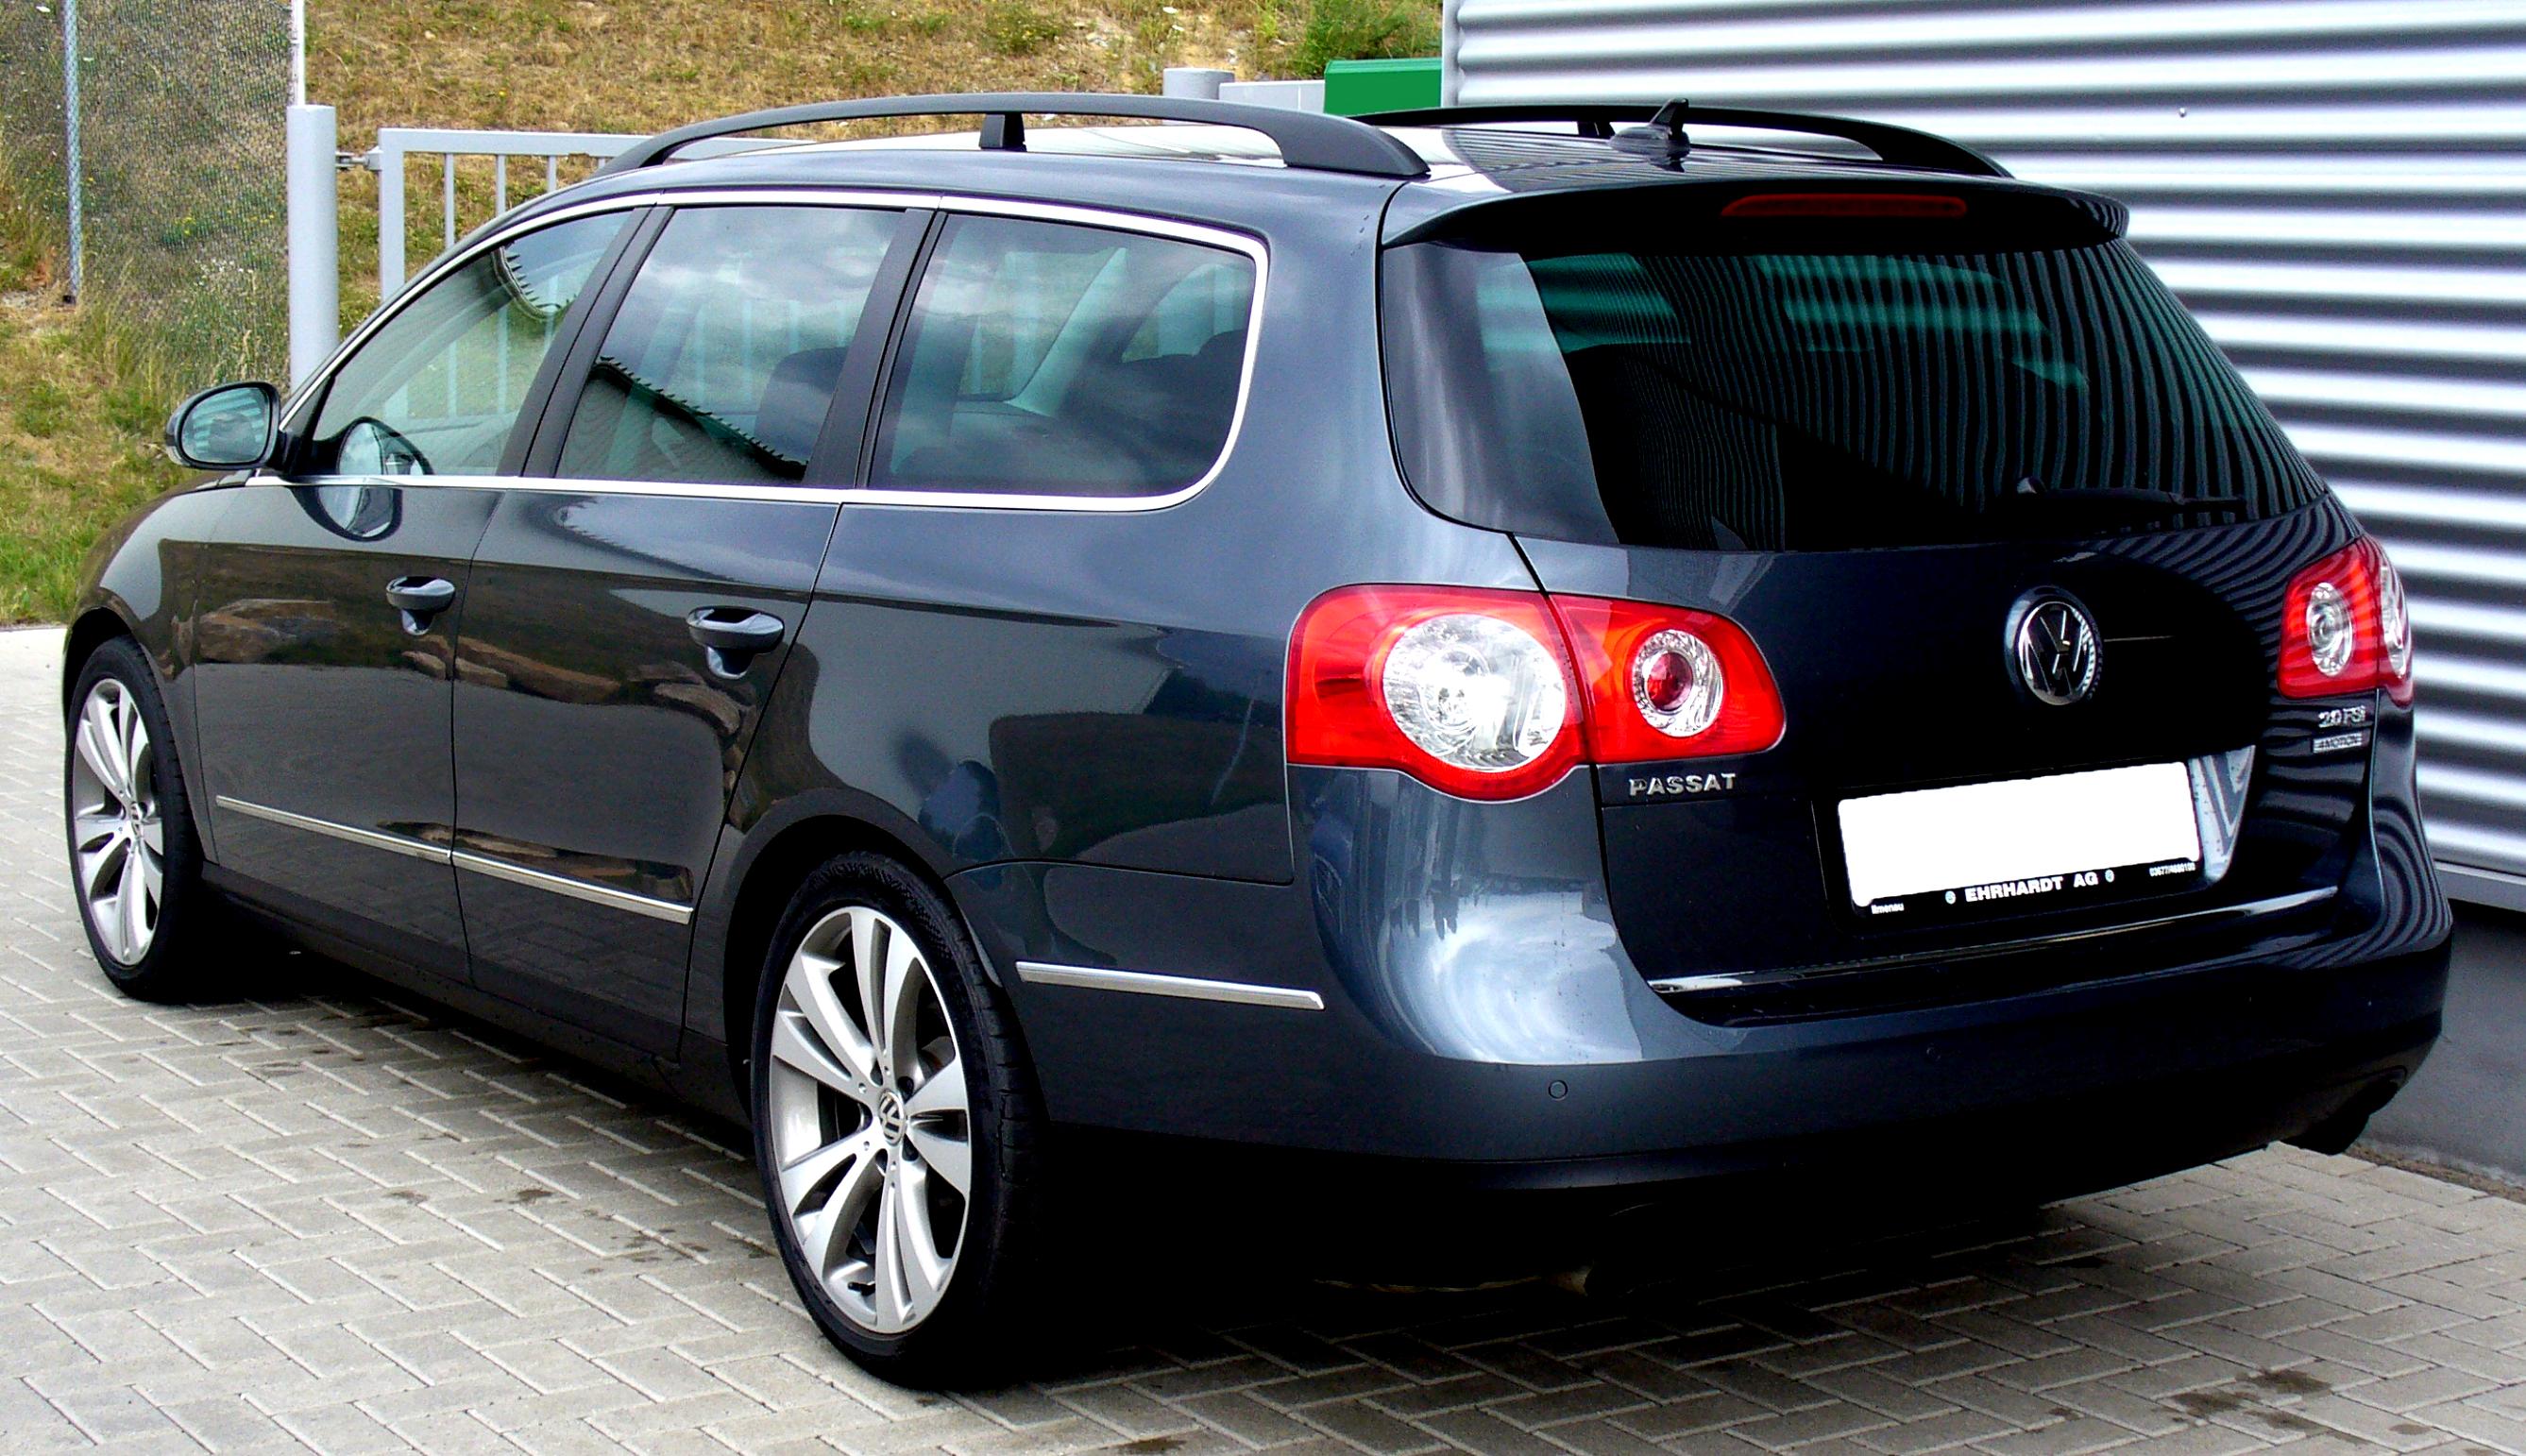 Фольксваген пассат б6 2008. Пассат б6 универсал. VW Passat b6 универсал. Фольксваген Passat b6 variant. Фольксваген Пассат универсал 2010.